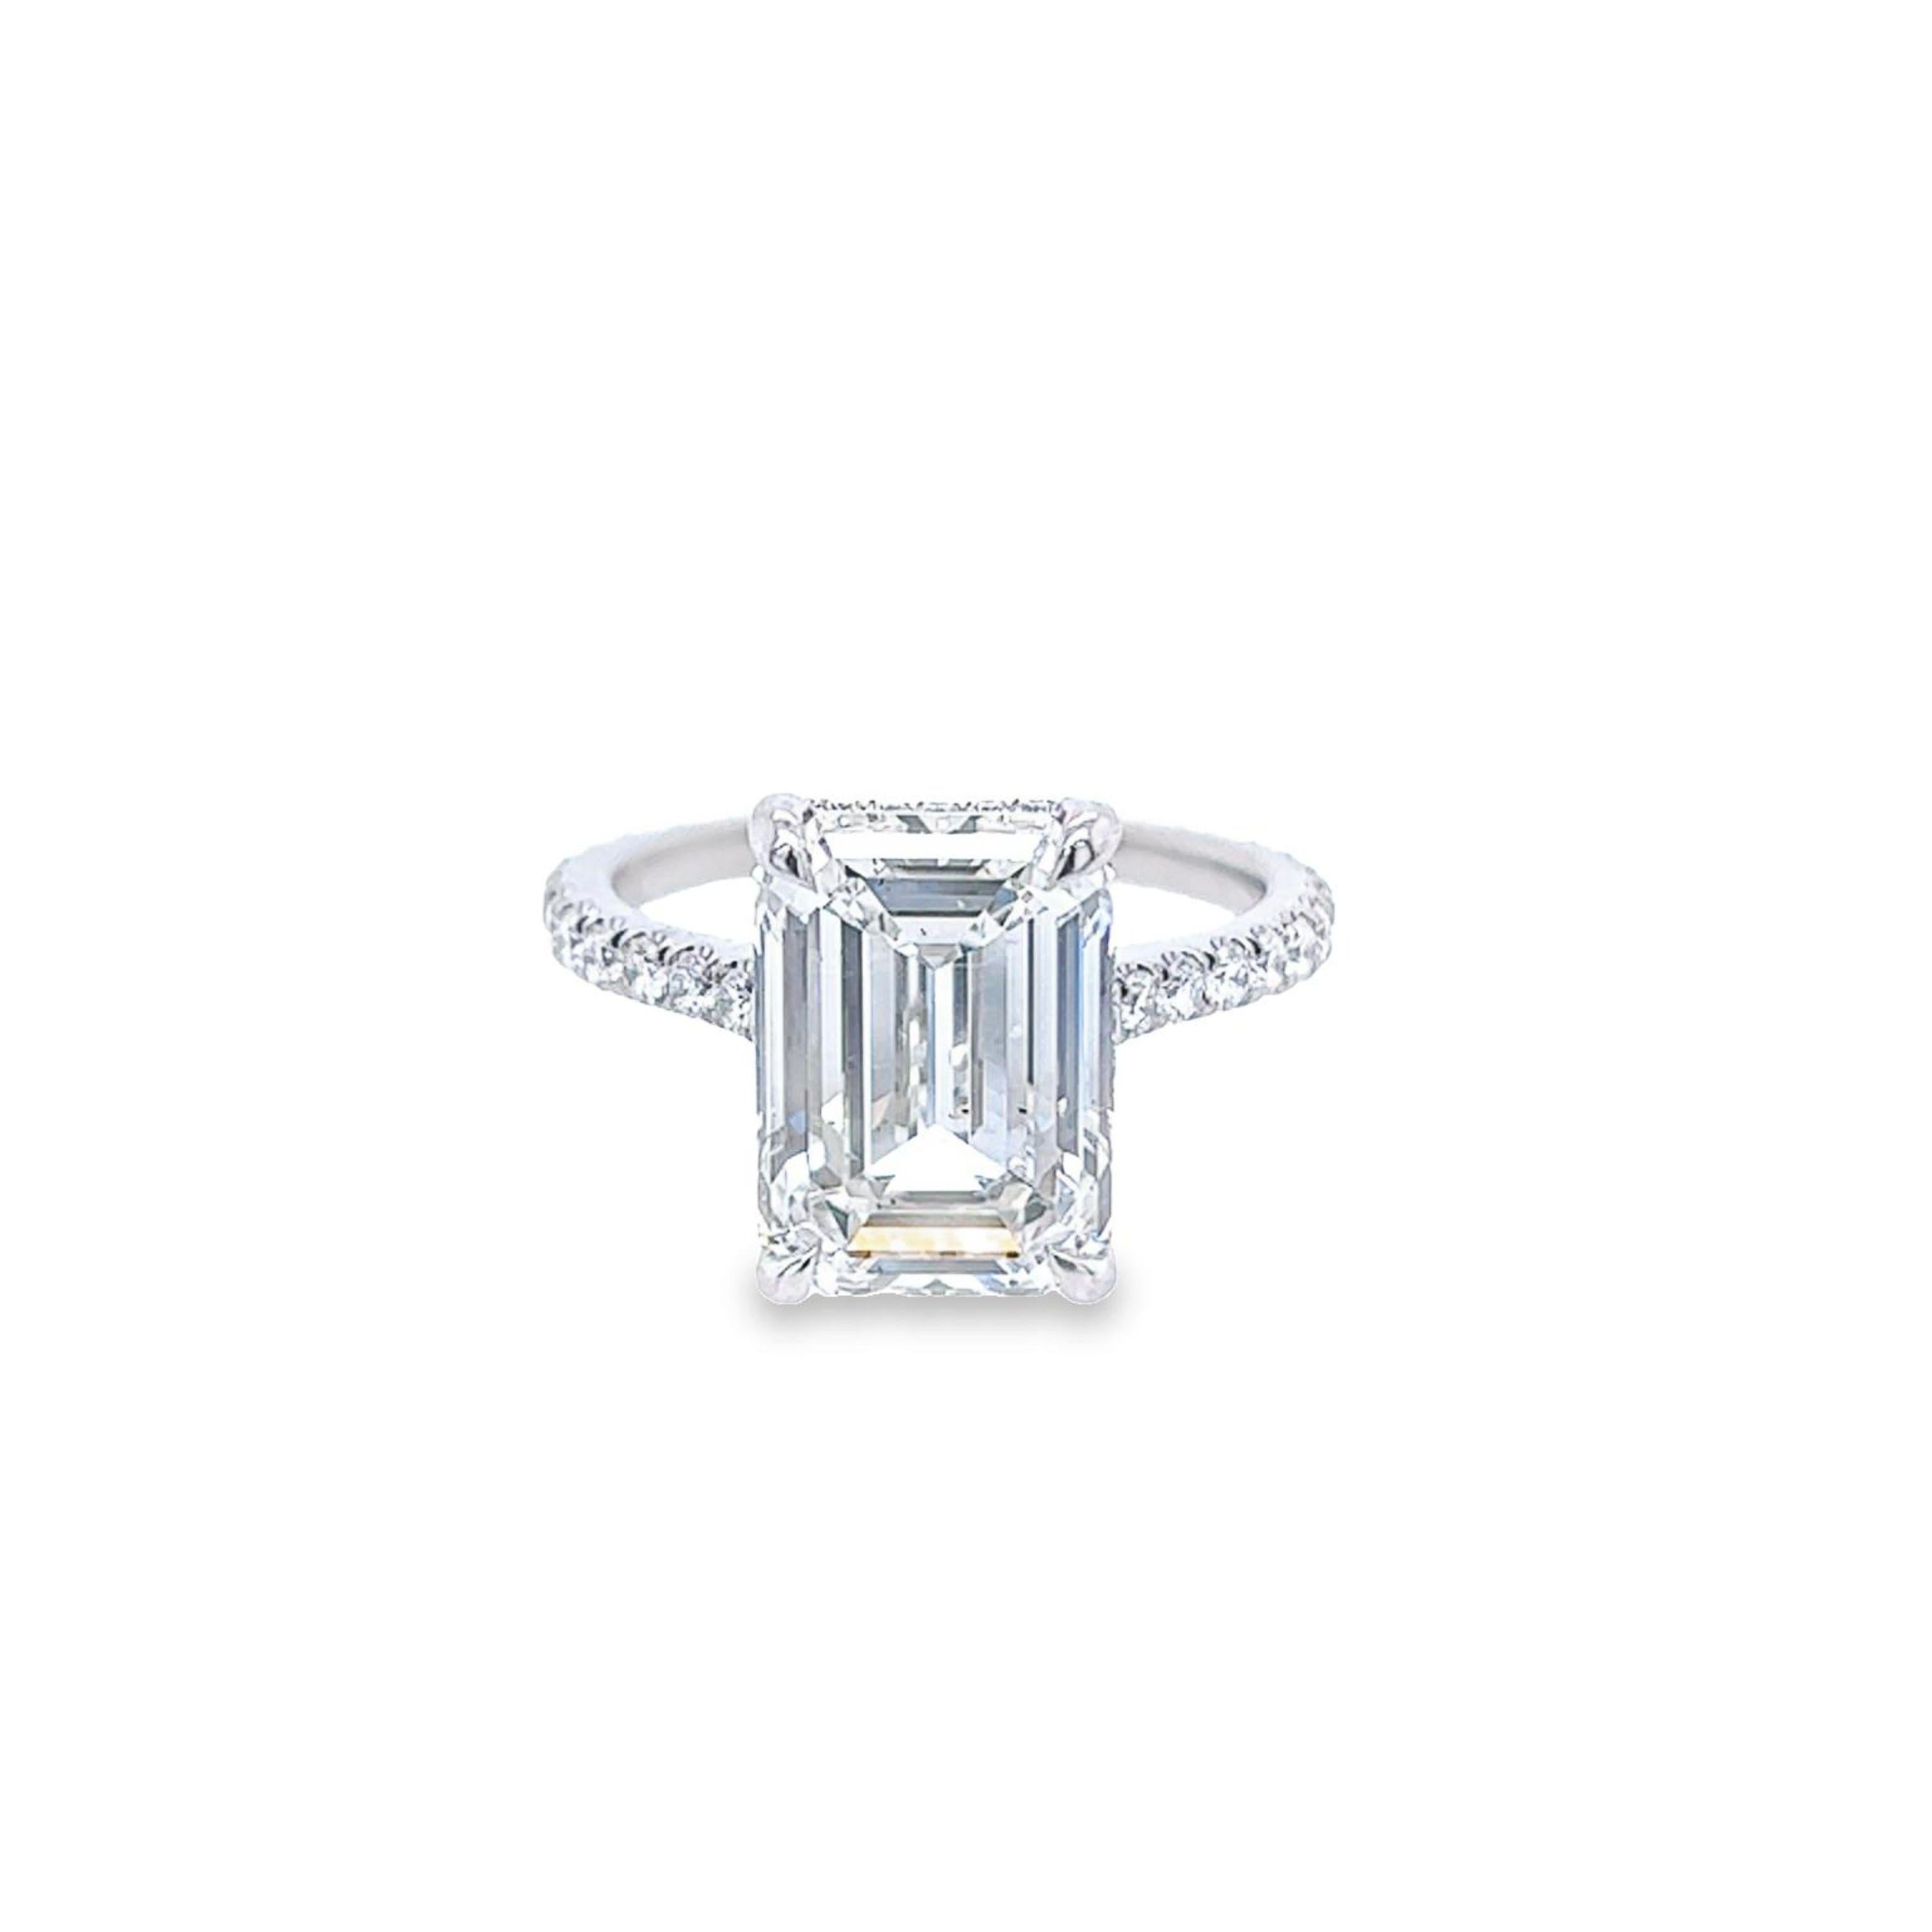 David Rosenberg 5.41 Carat Emerald Cut GIA Diamond Engagement Ring 3